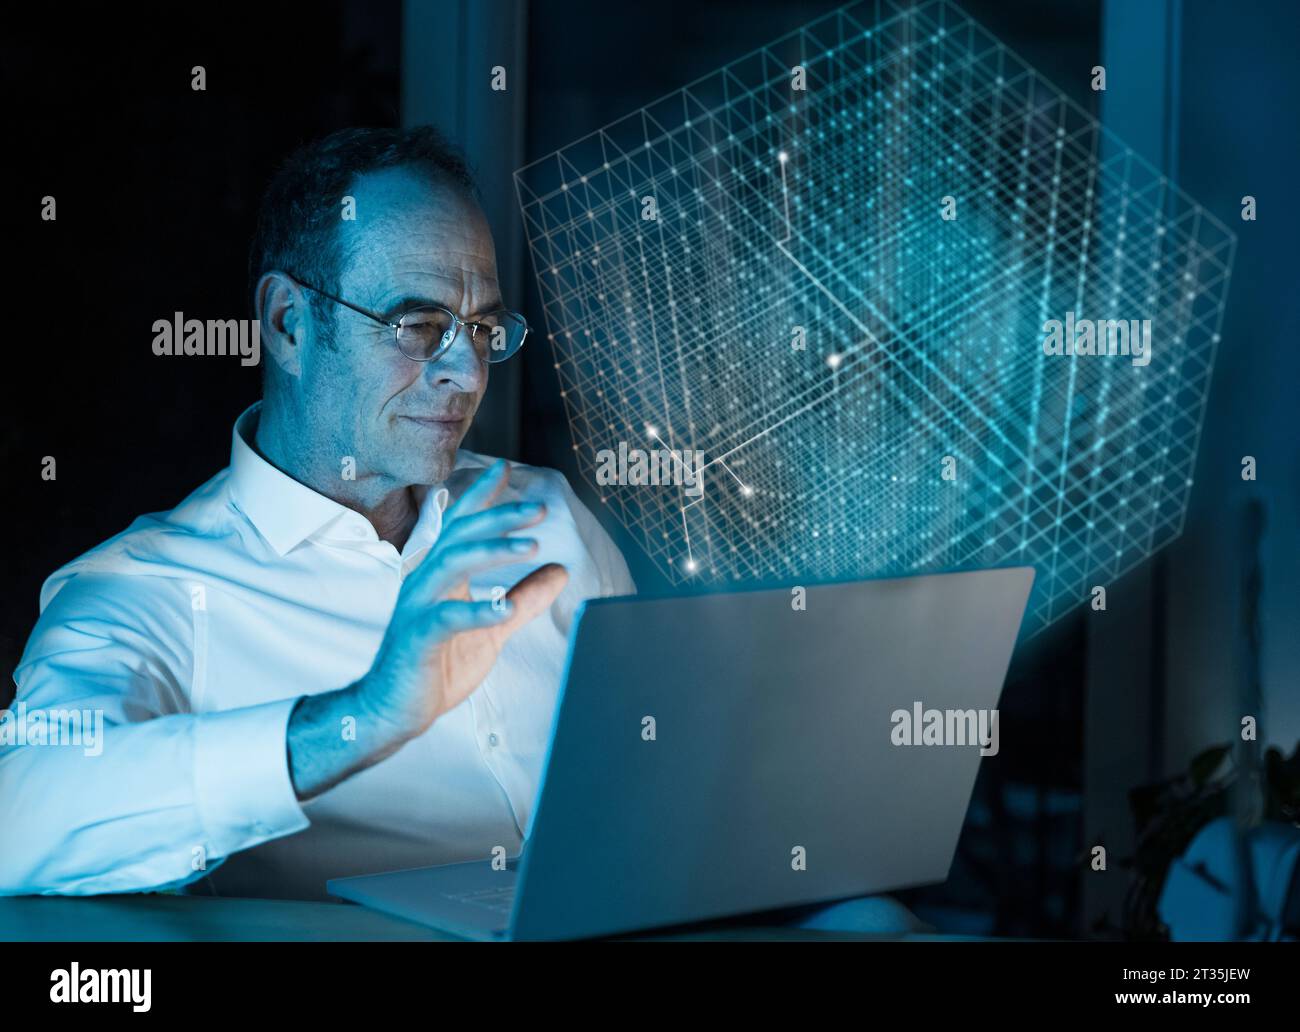 Imagen compuesta digital del hombre de negocios usando el ordenador portátil con el cubo 3D en la oficina Foto de stock